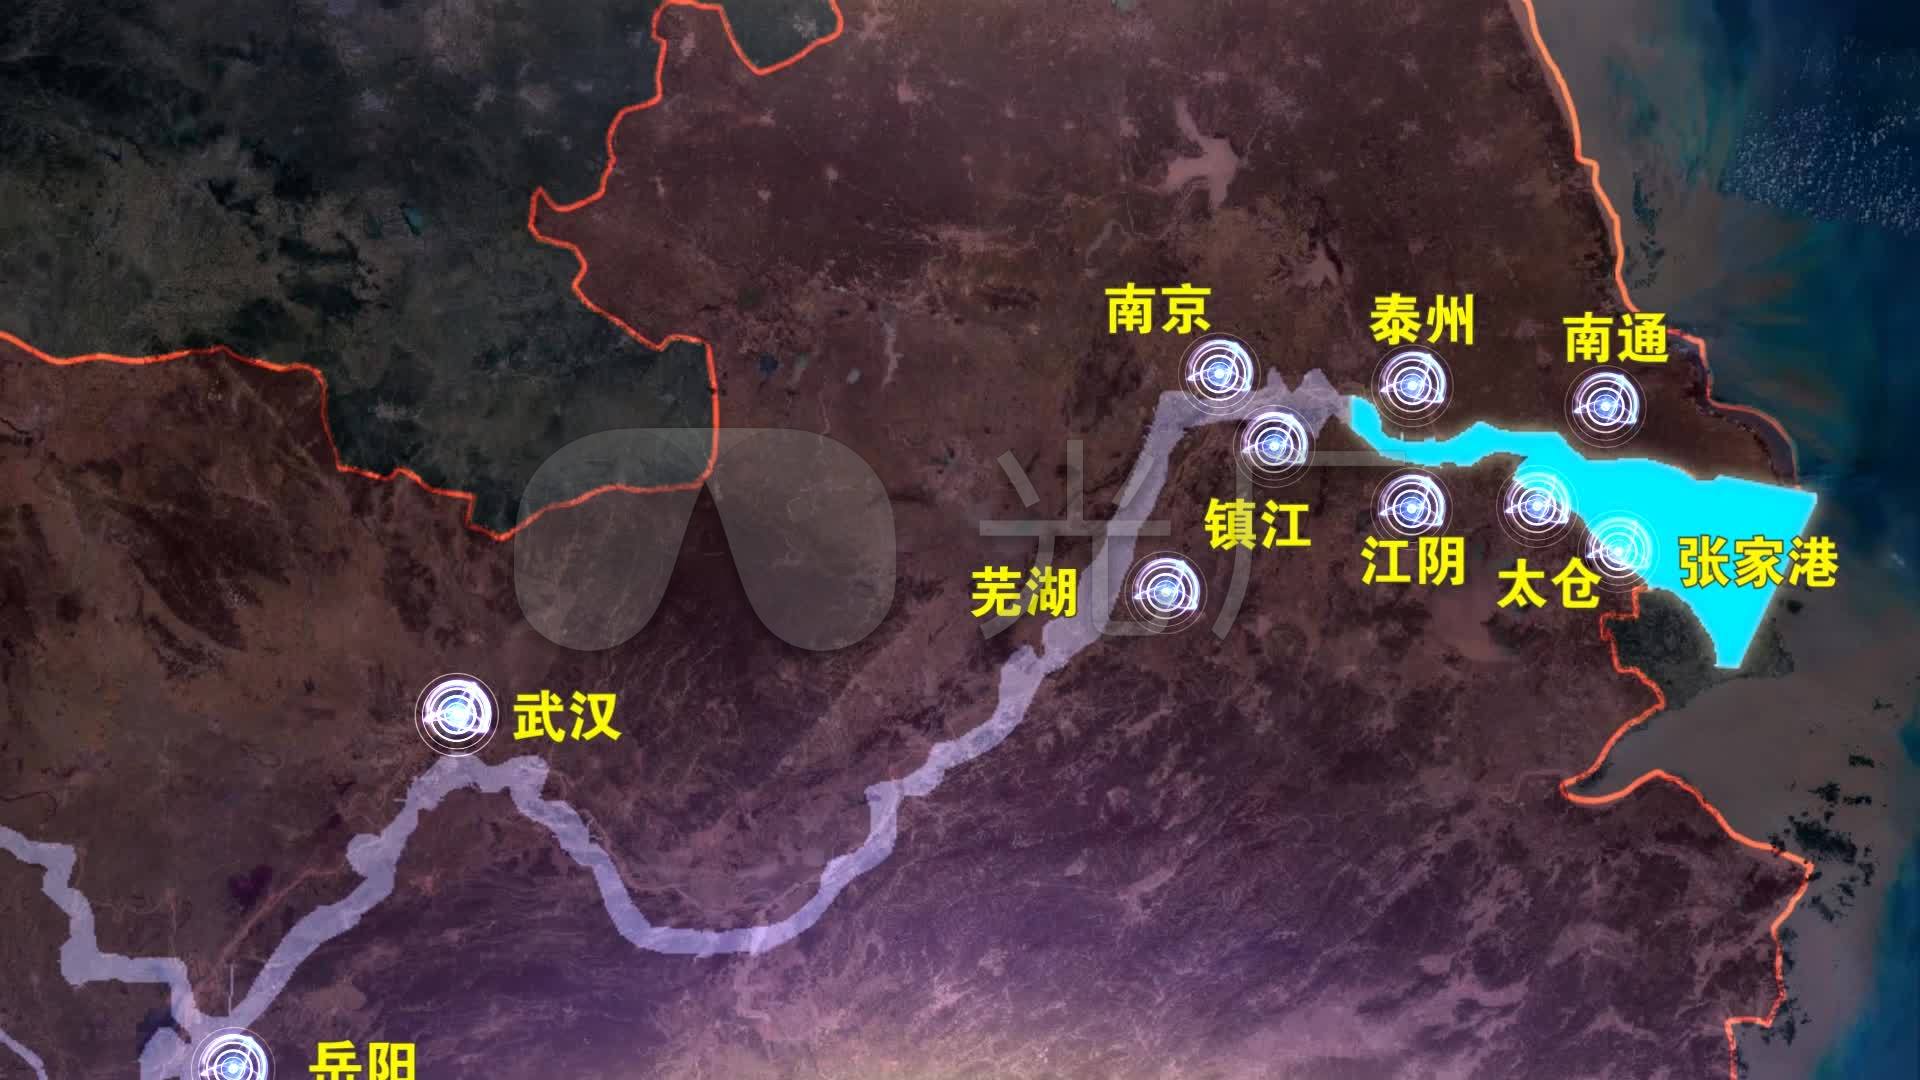 基于历史地图与遥感影像的近百年来长江荆江段河道演变